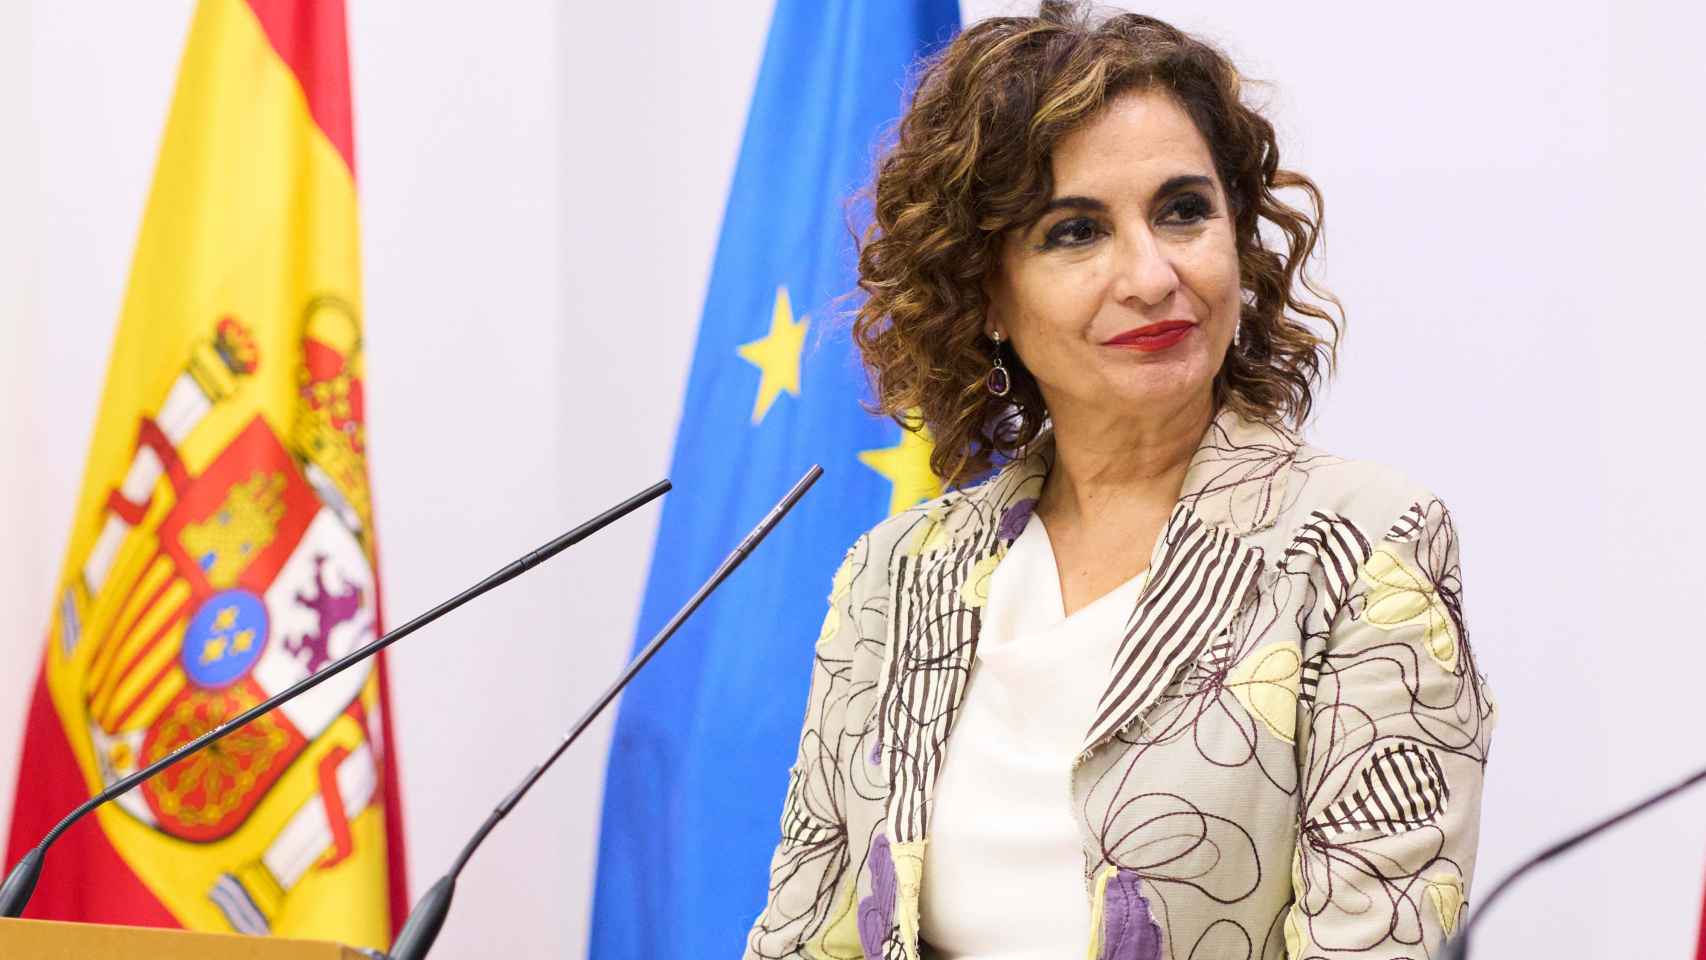 La ministra de Hacienda, María Jesús Montero, durante una intervención en Santander.